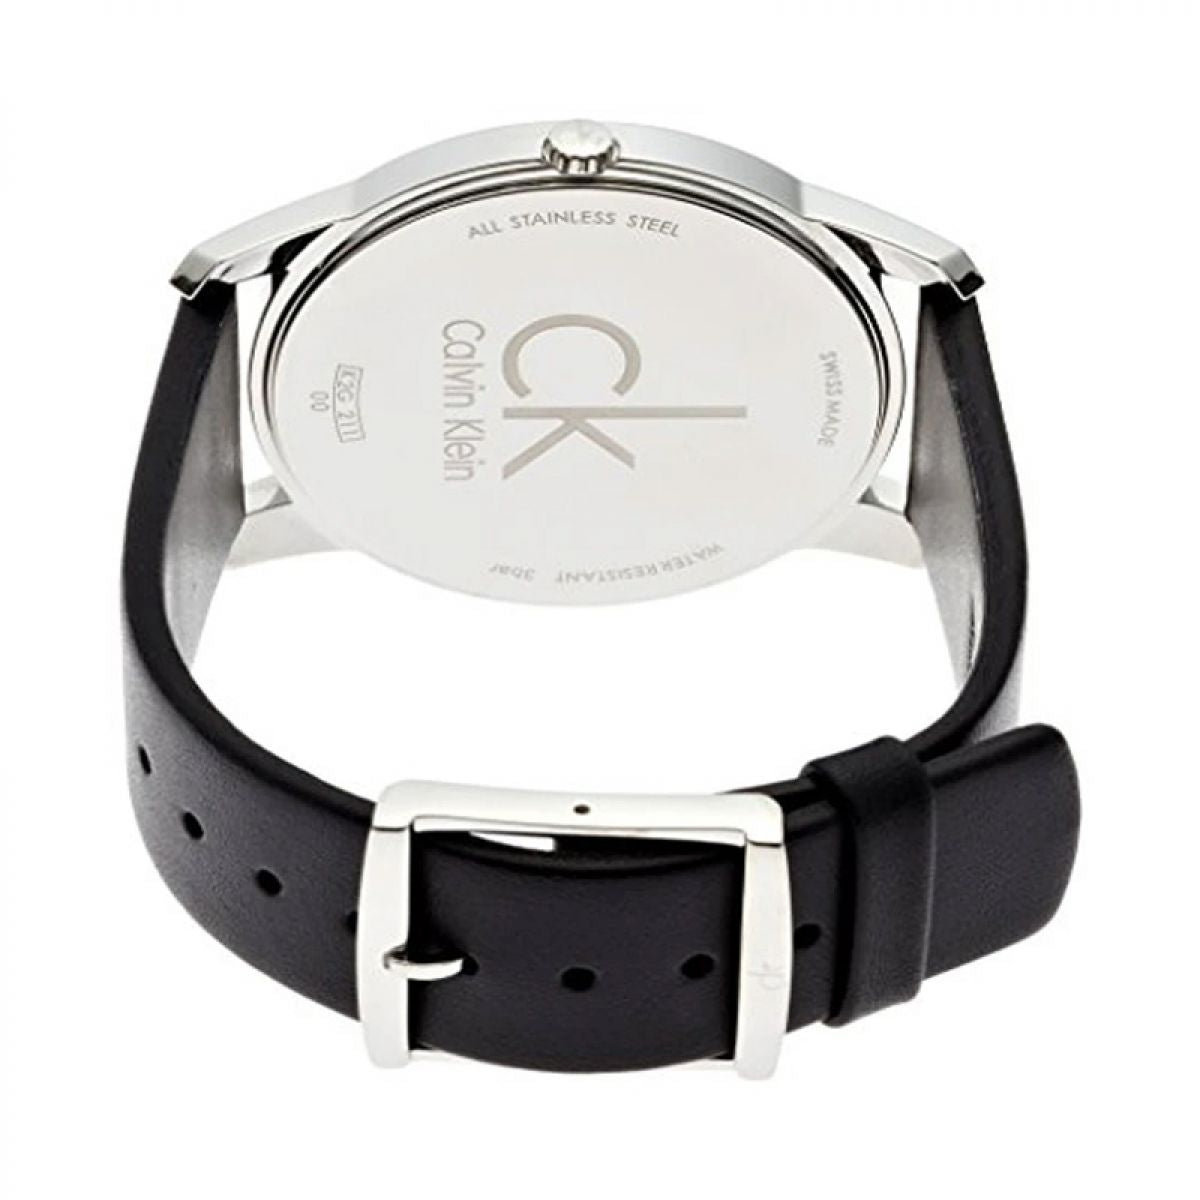 Calvin Klein K2G211C6 Heren Horloge 43mm